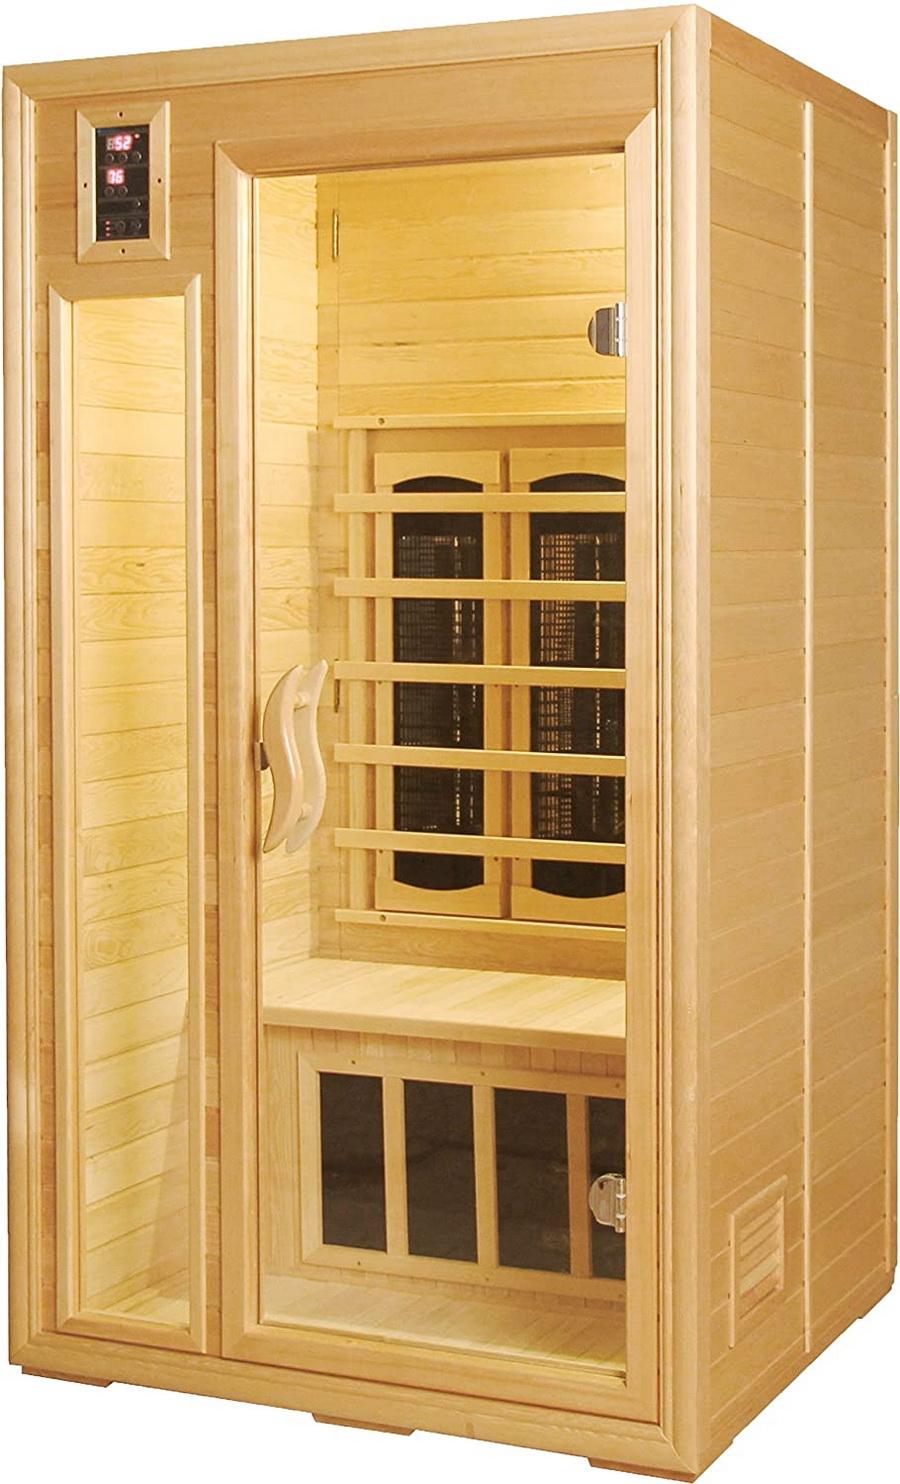 Sunheat SH1200-GD Personal Infrared Sauna